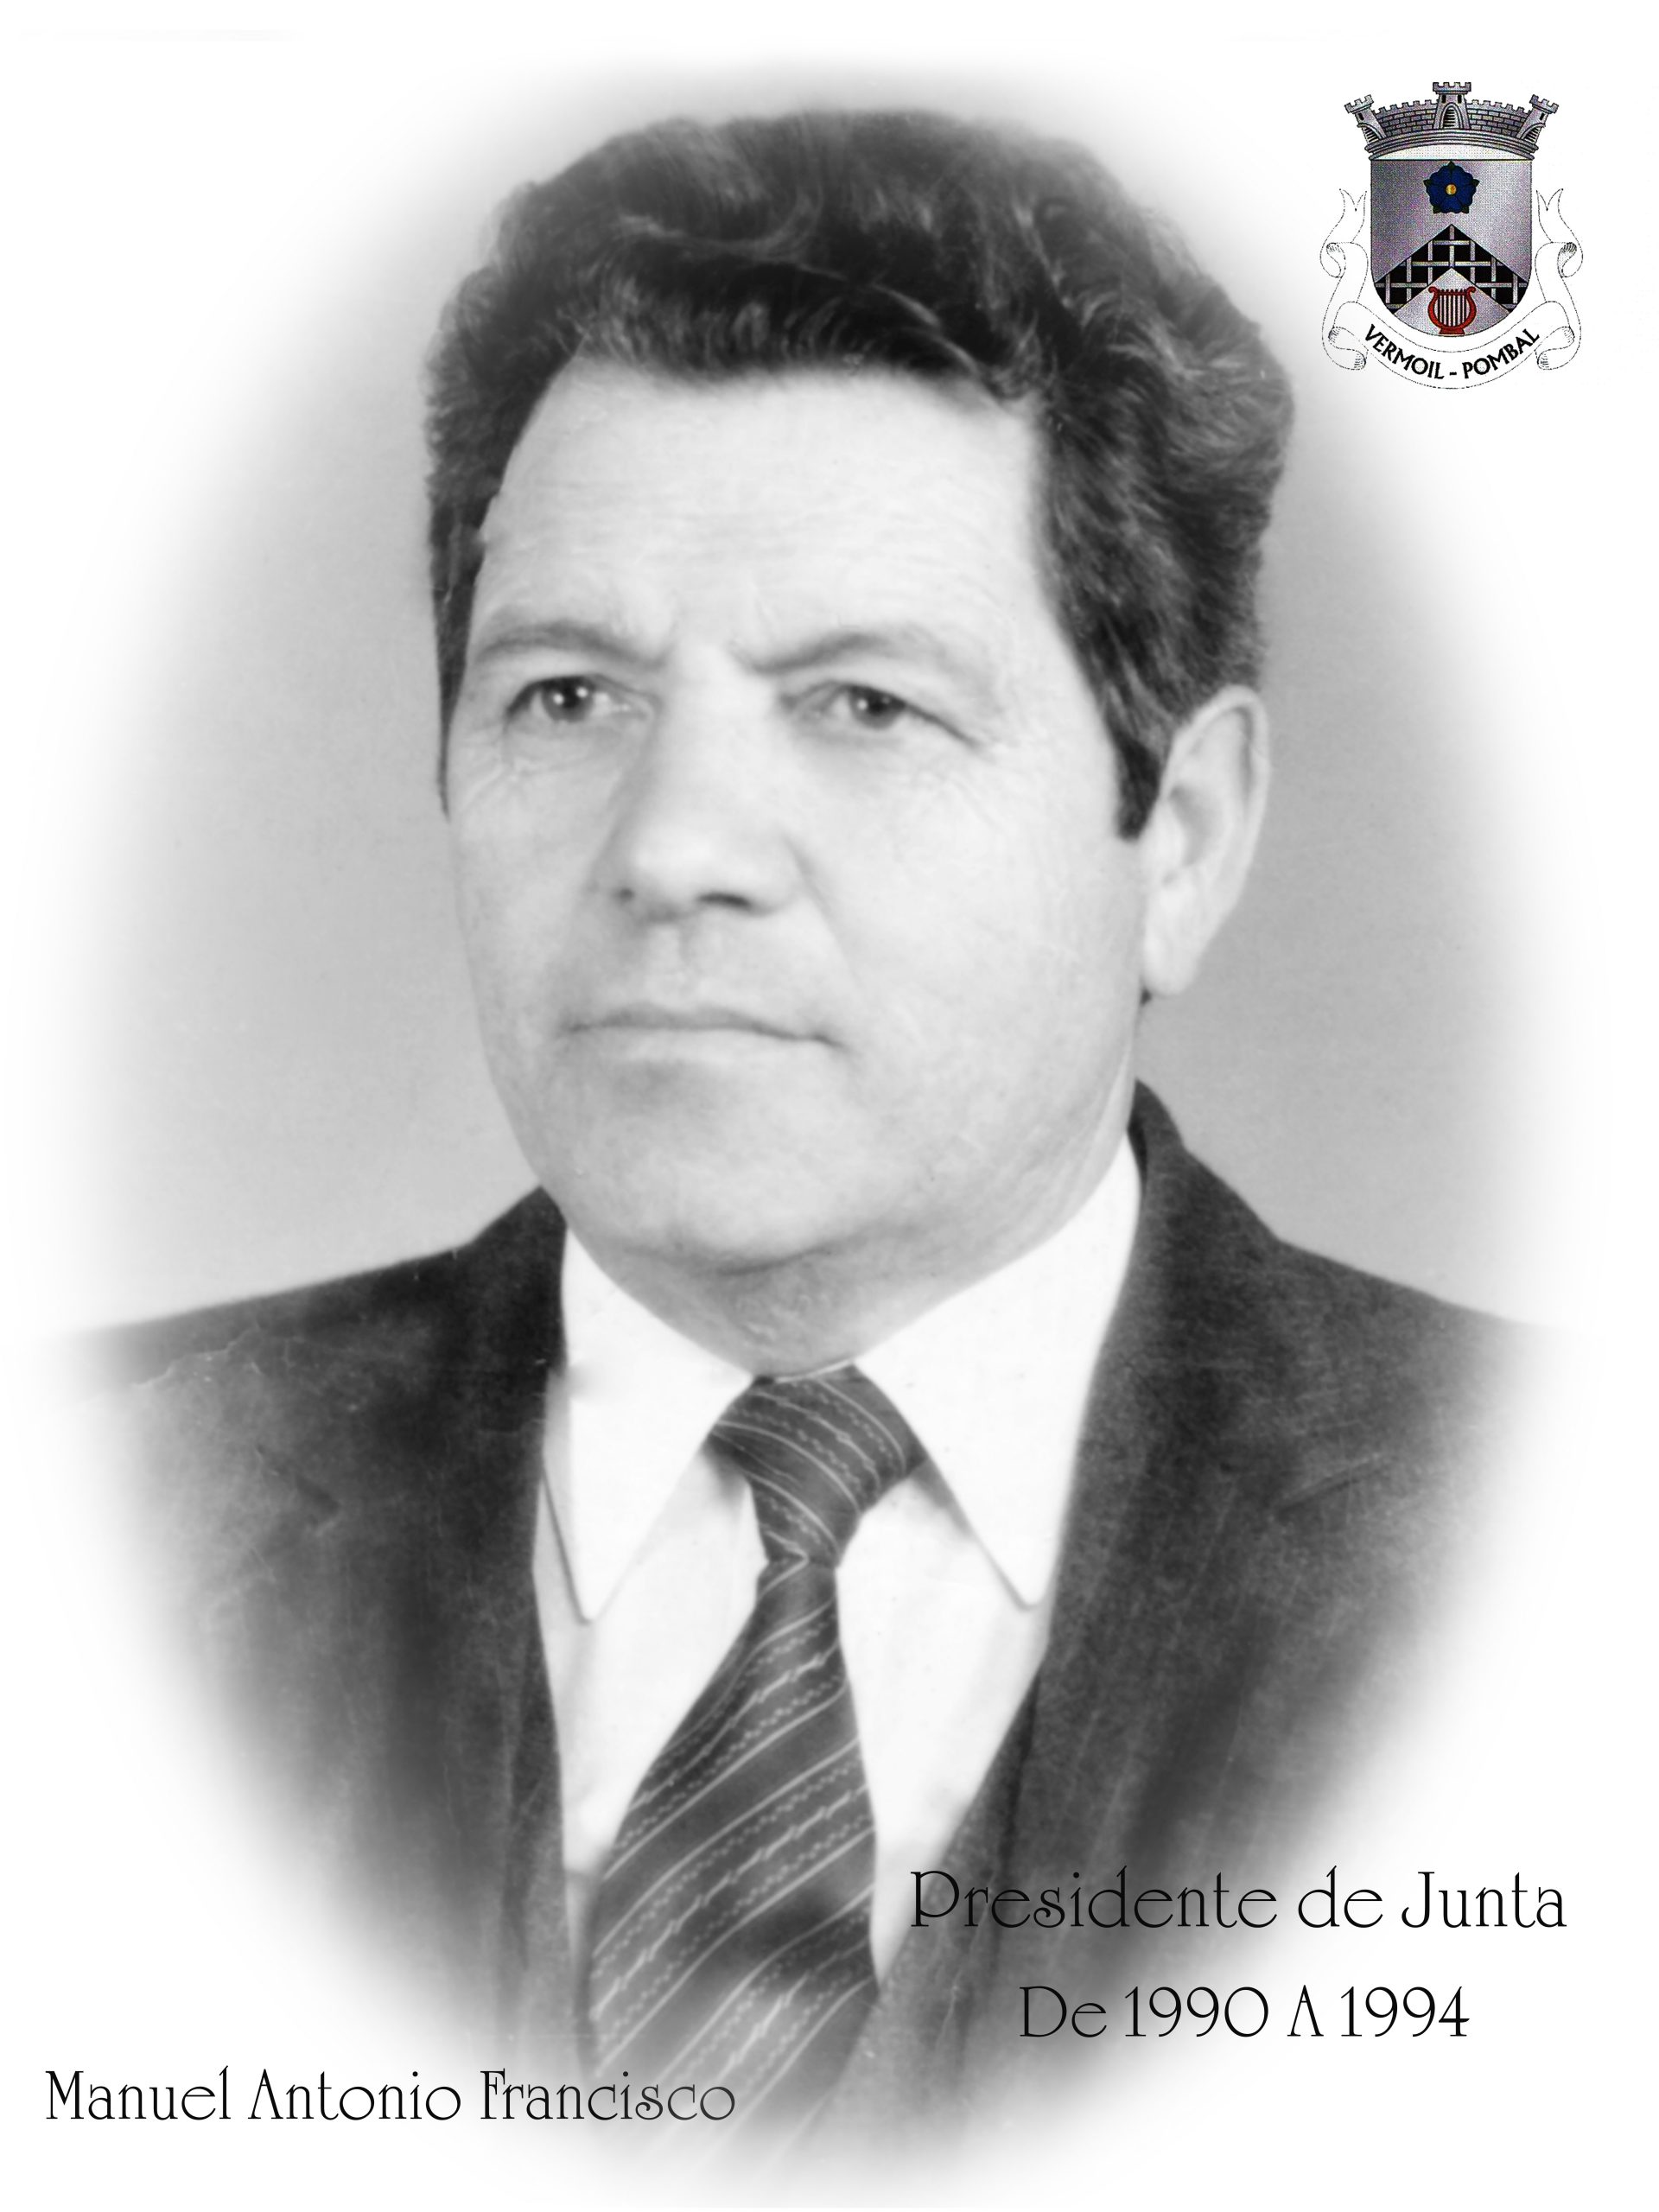 Manuel António Francisco - Mandato de 1990 a 1994